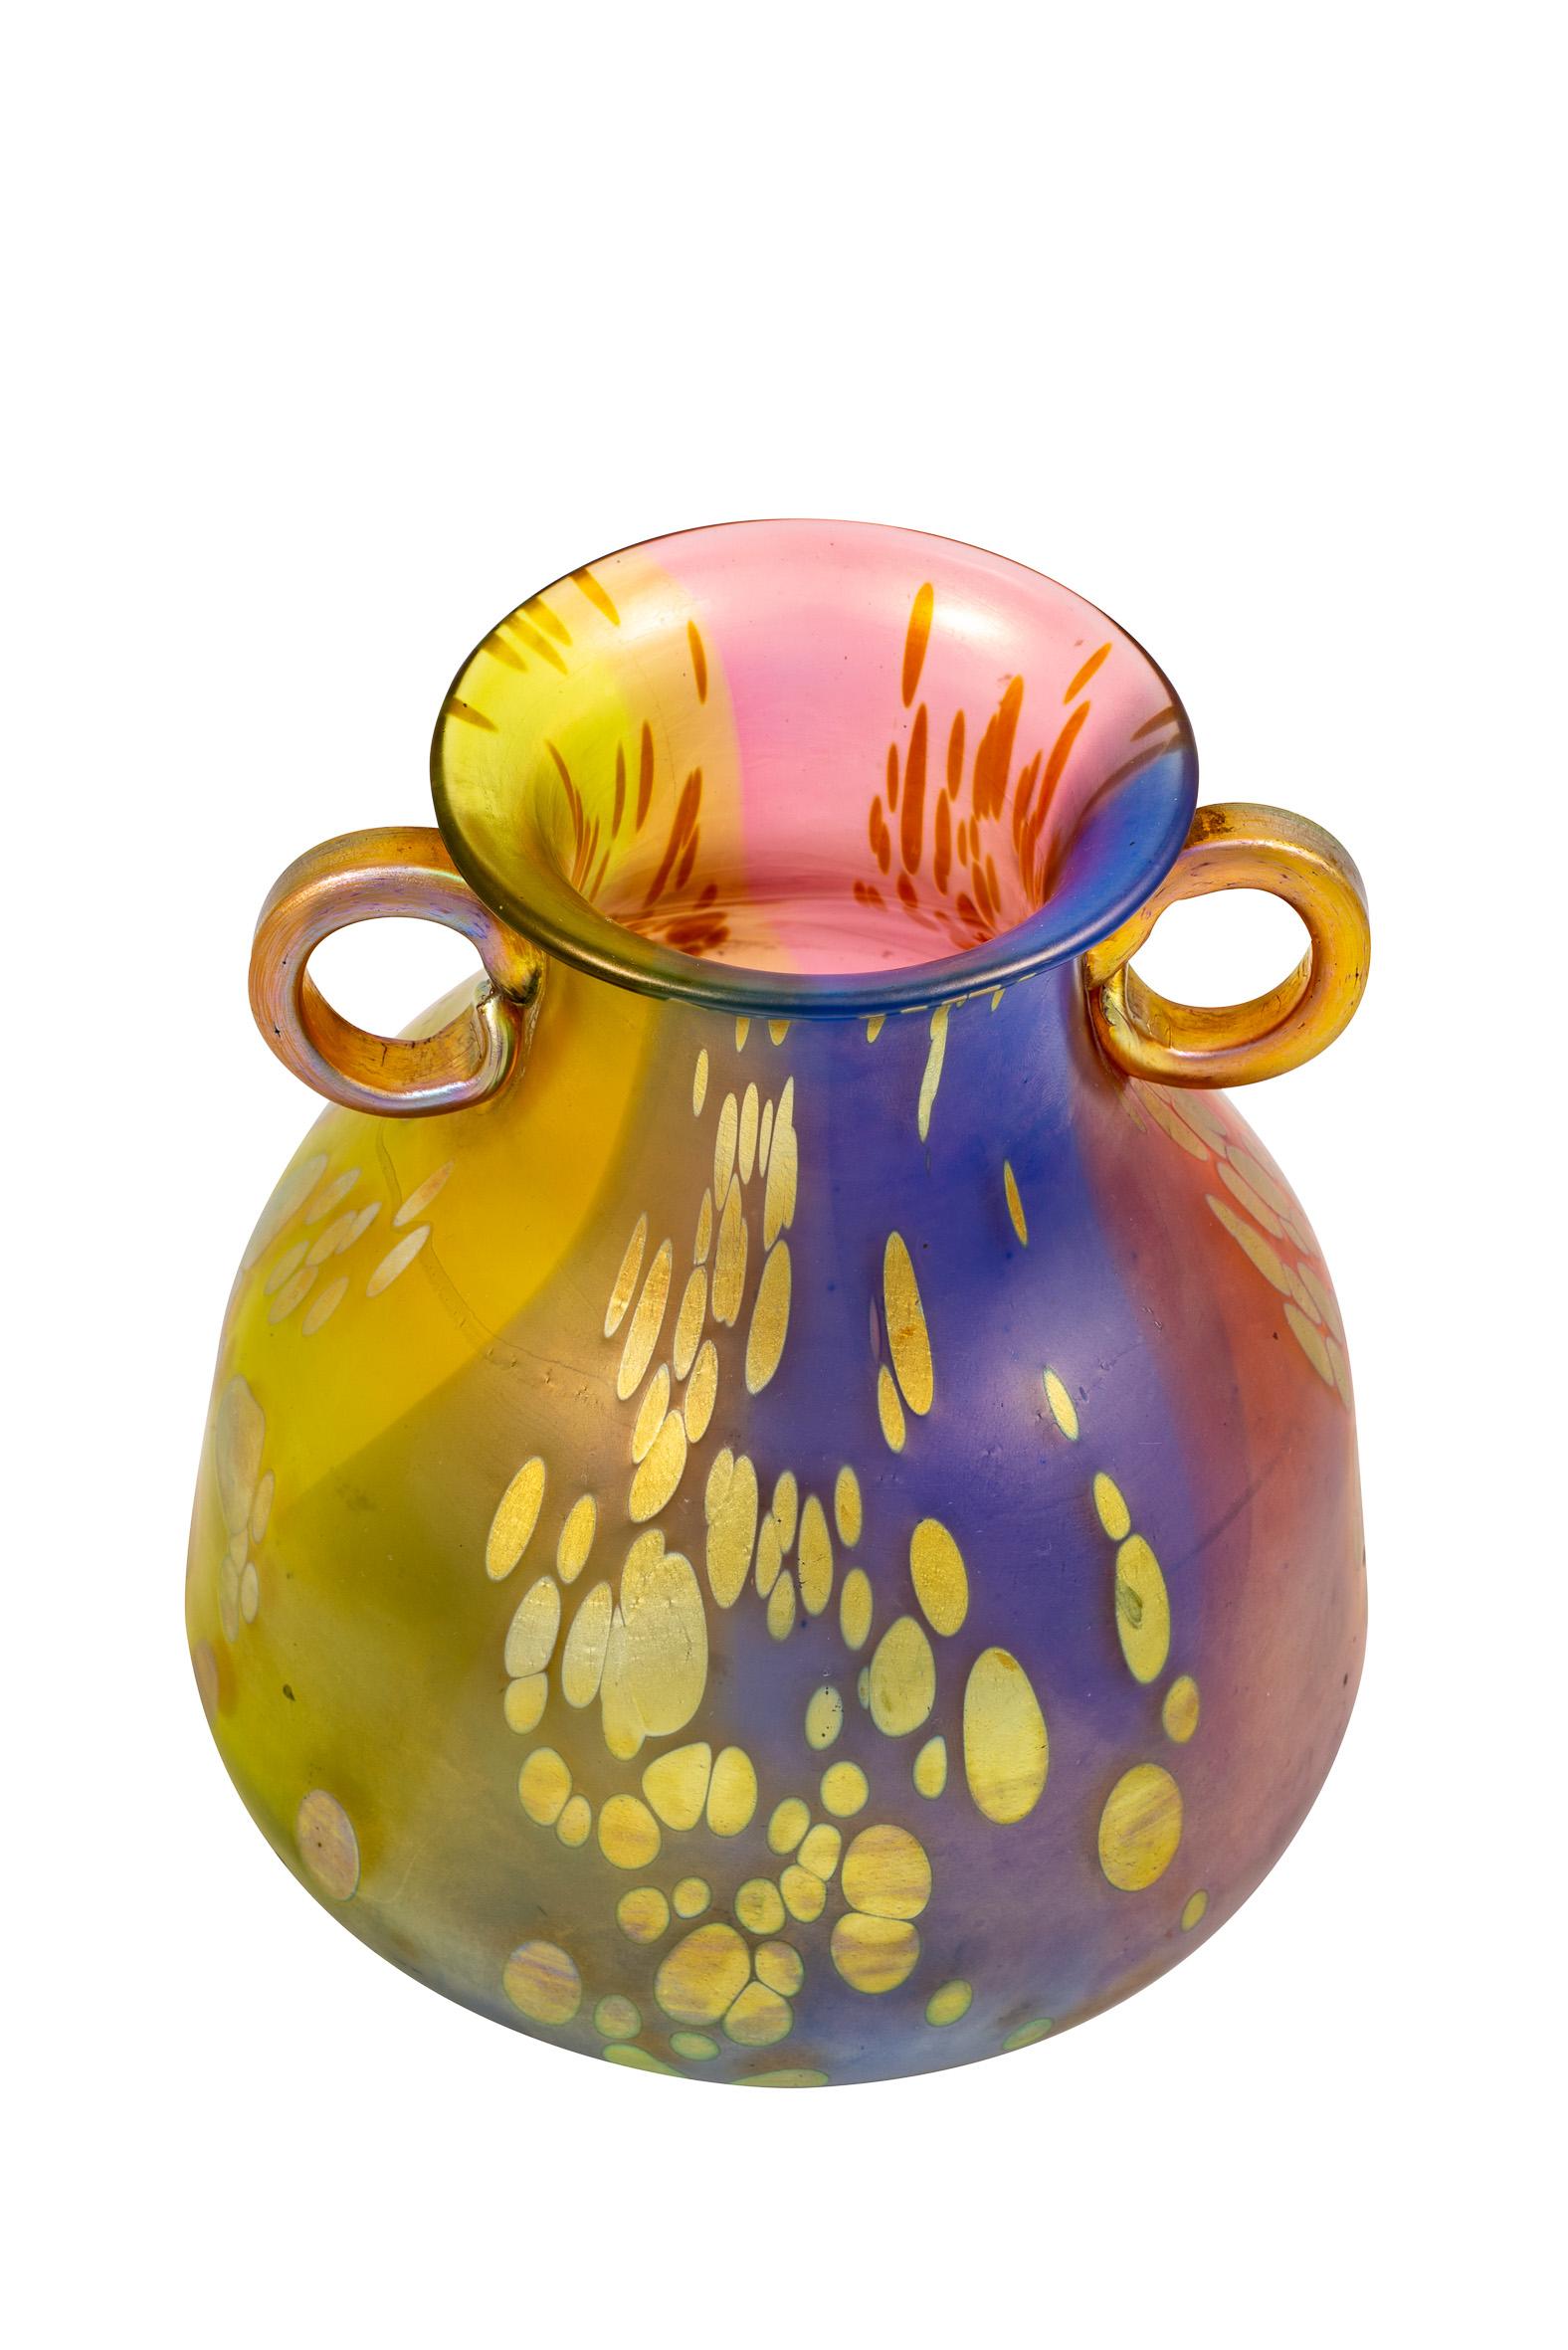 Vase fabriqué par Johann Loetz Witwe Décoration tricolore vers 1900 Verre autrichien Jugendstil moulé-soufflé réduit et irisé Couleurs arc-en-ciel Bleu Rouge Vert Jaune

Ce groupe de vases avec la décoration 